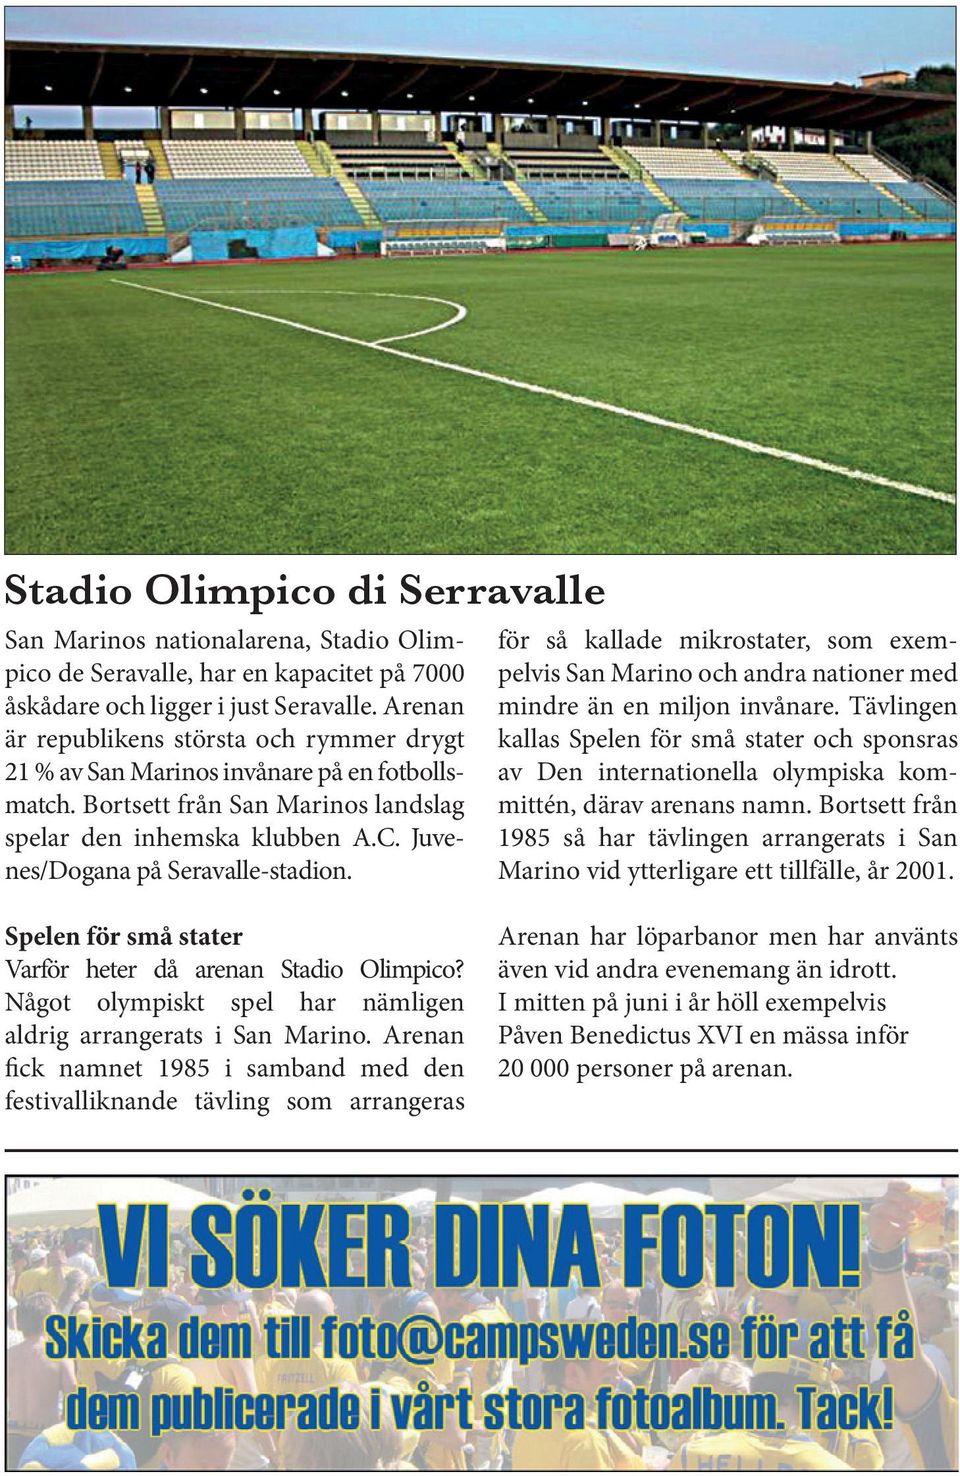 Juvenes/Dogana på Seravalle-stadion. för så kallade mikrostater, som exempelvis San Marino och andra nationer med mindre än en miljon invånare.